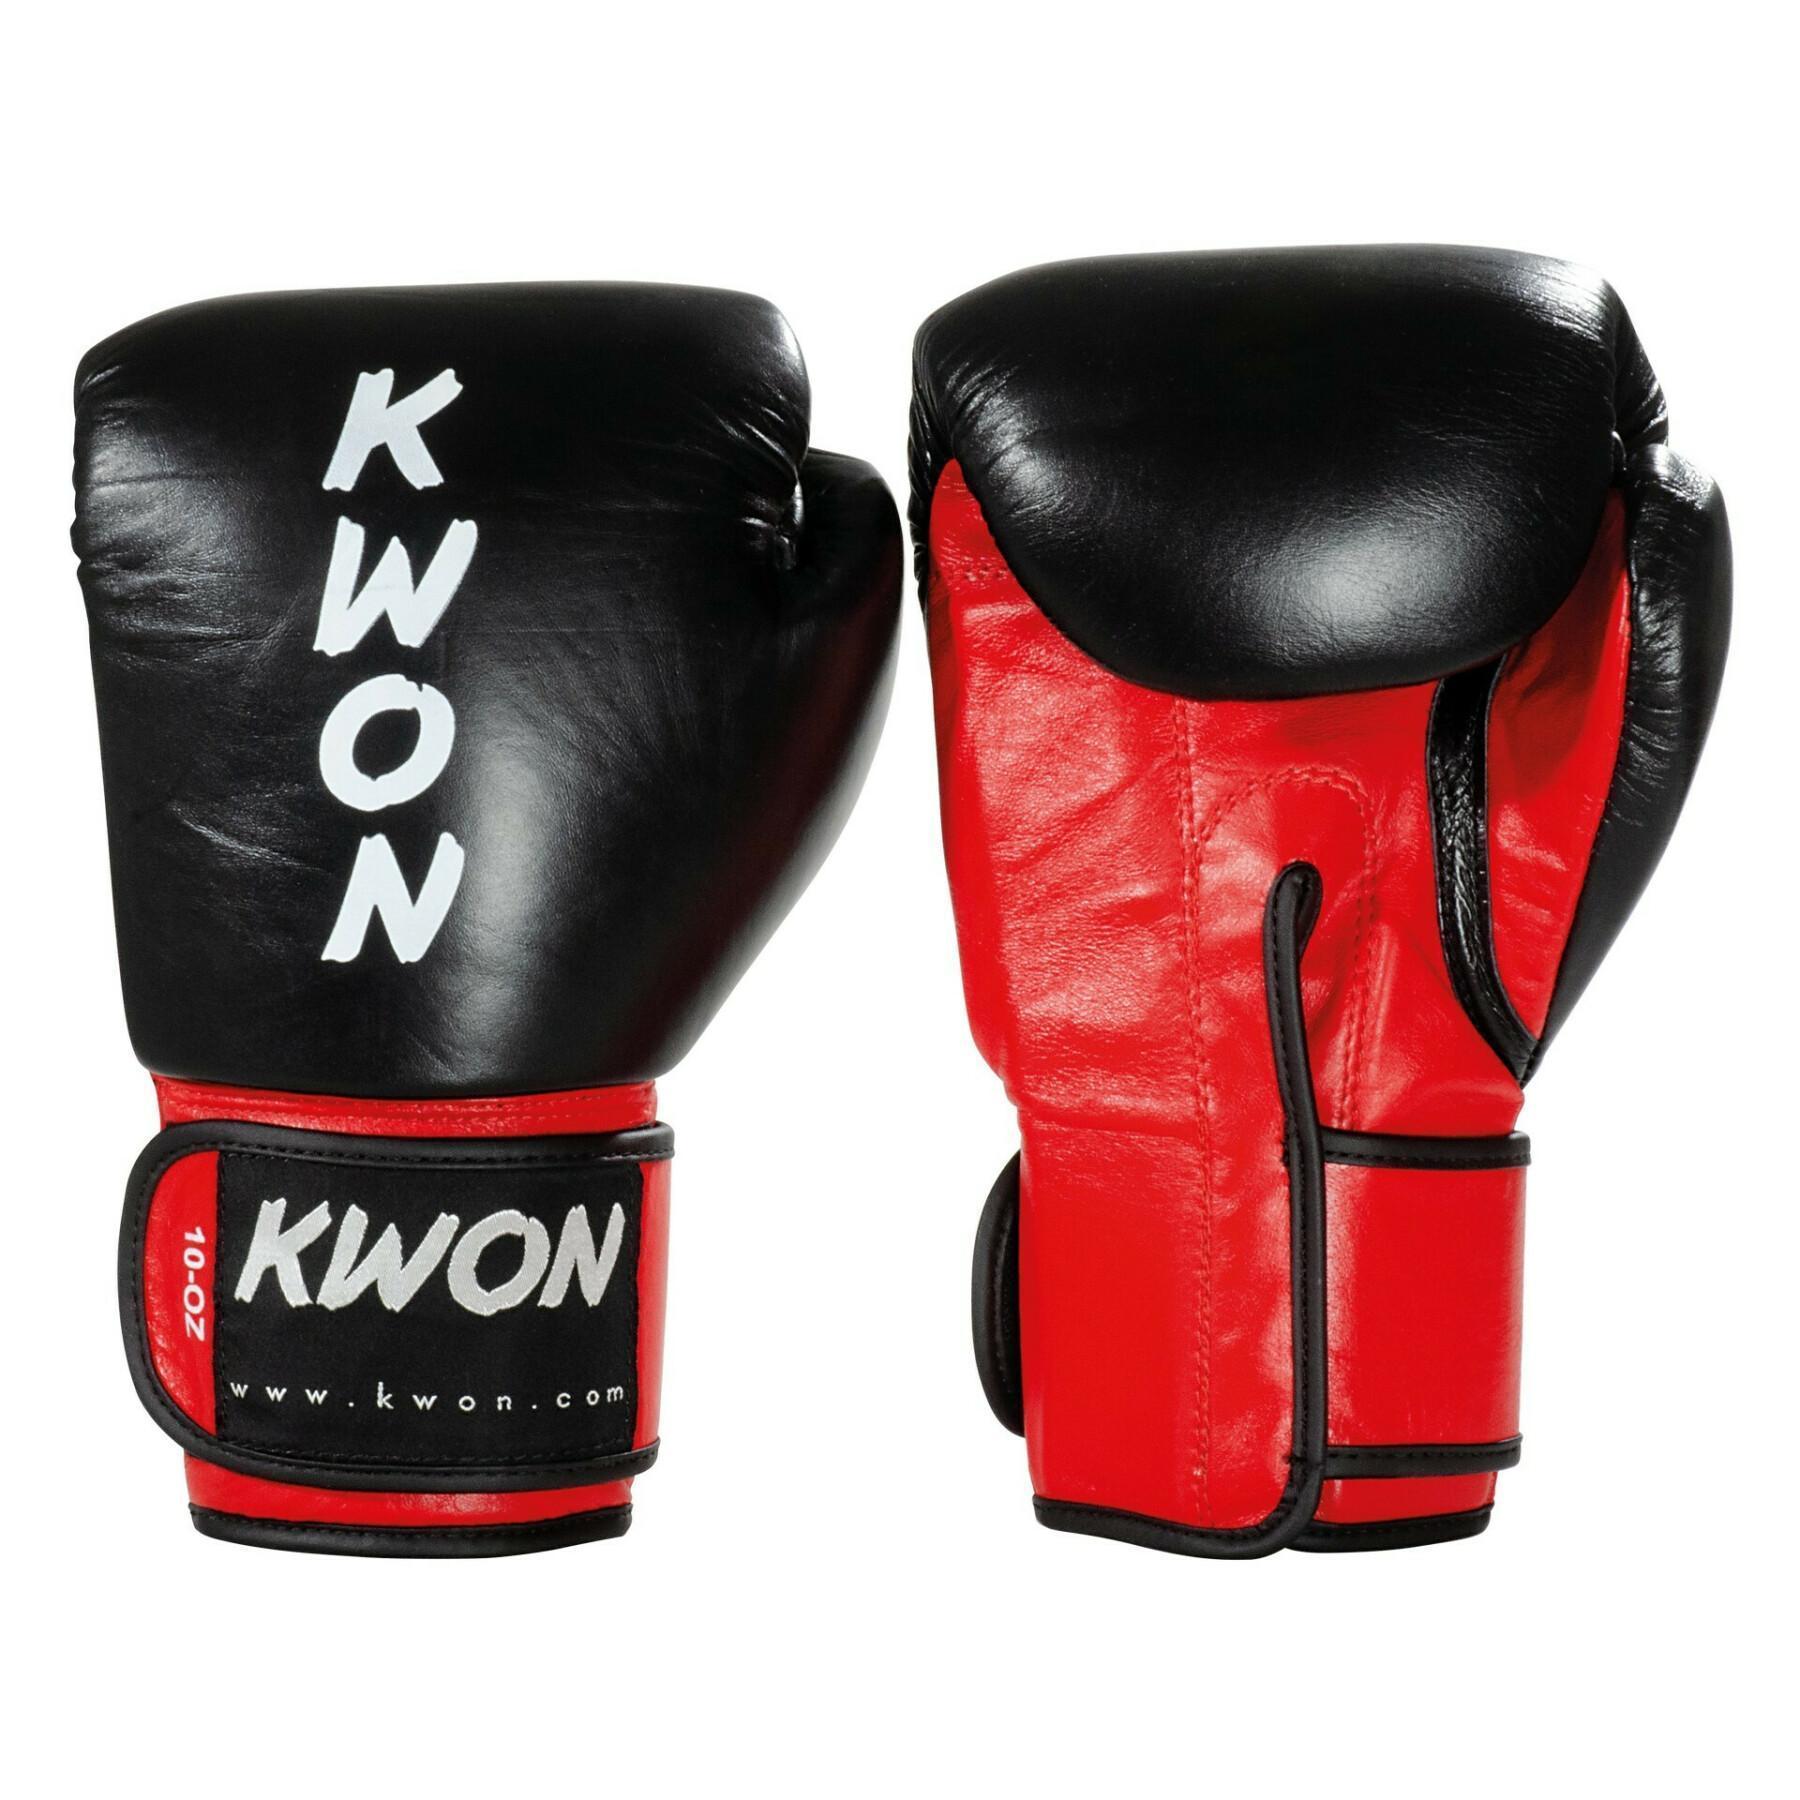 Gants de boxe Kwon KO Champ